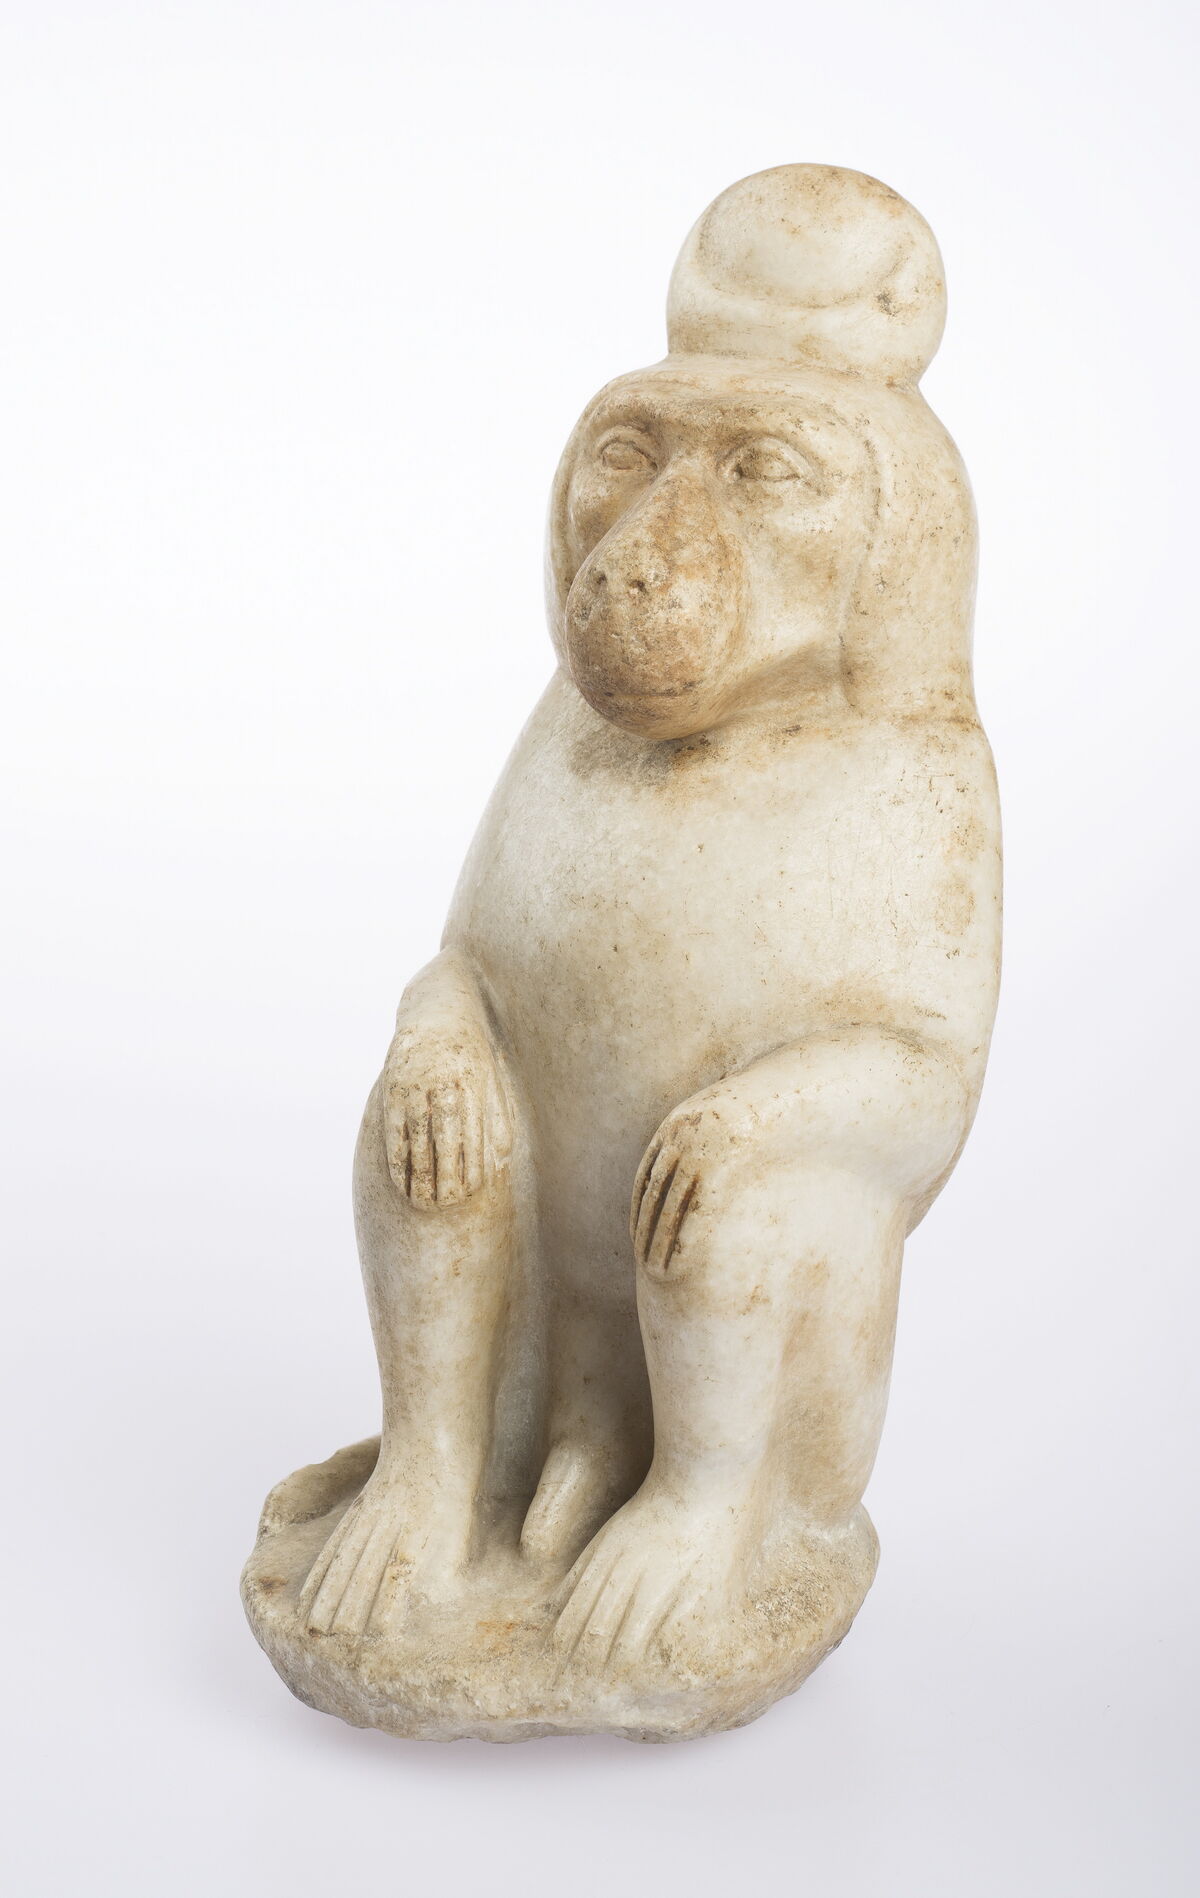 Estatuilla del dios Thoth en forma de babuino Egipto, época romana, siglo I a. C. - siglo 4 a. C.  Foto de Ardon Bar-Hama.  Cortesía del Museo Freud de Londres.